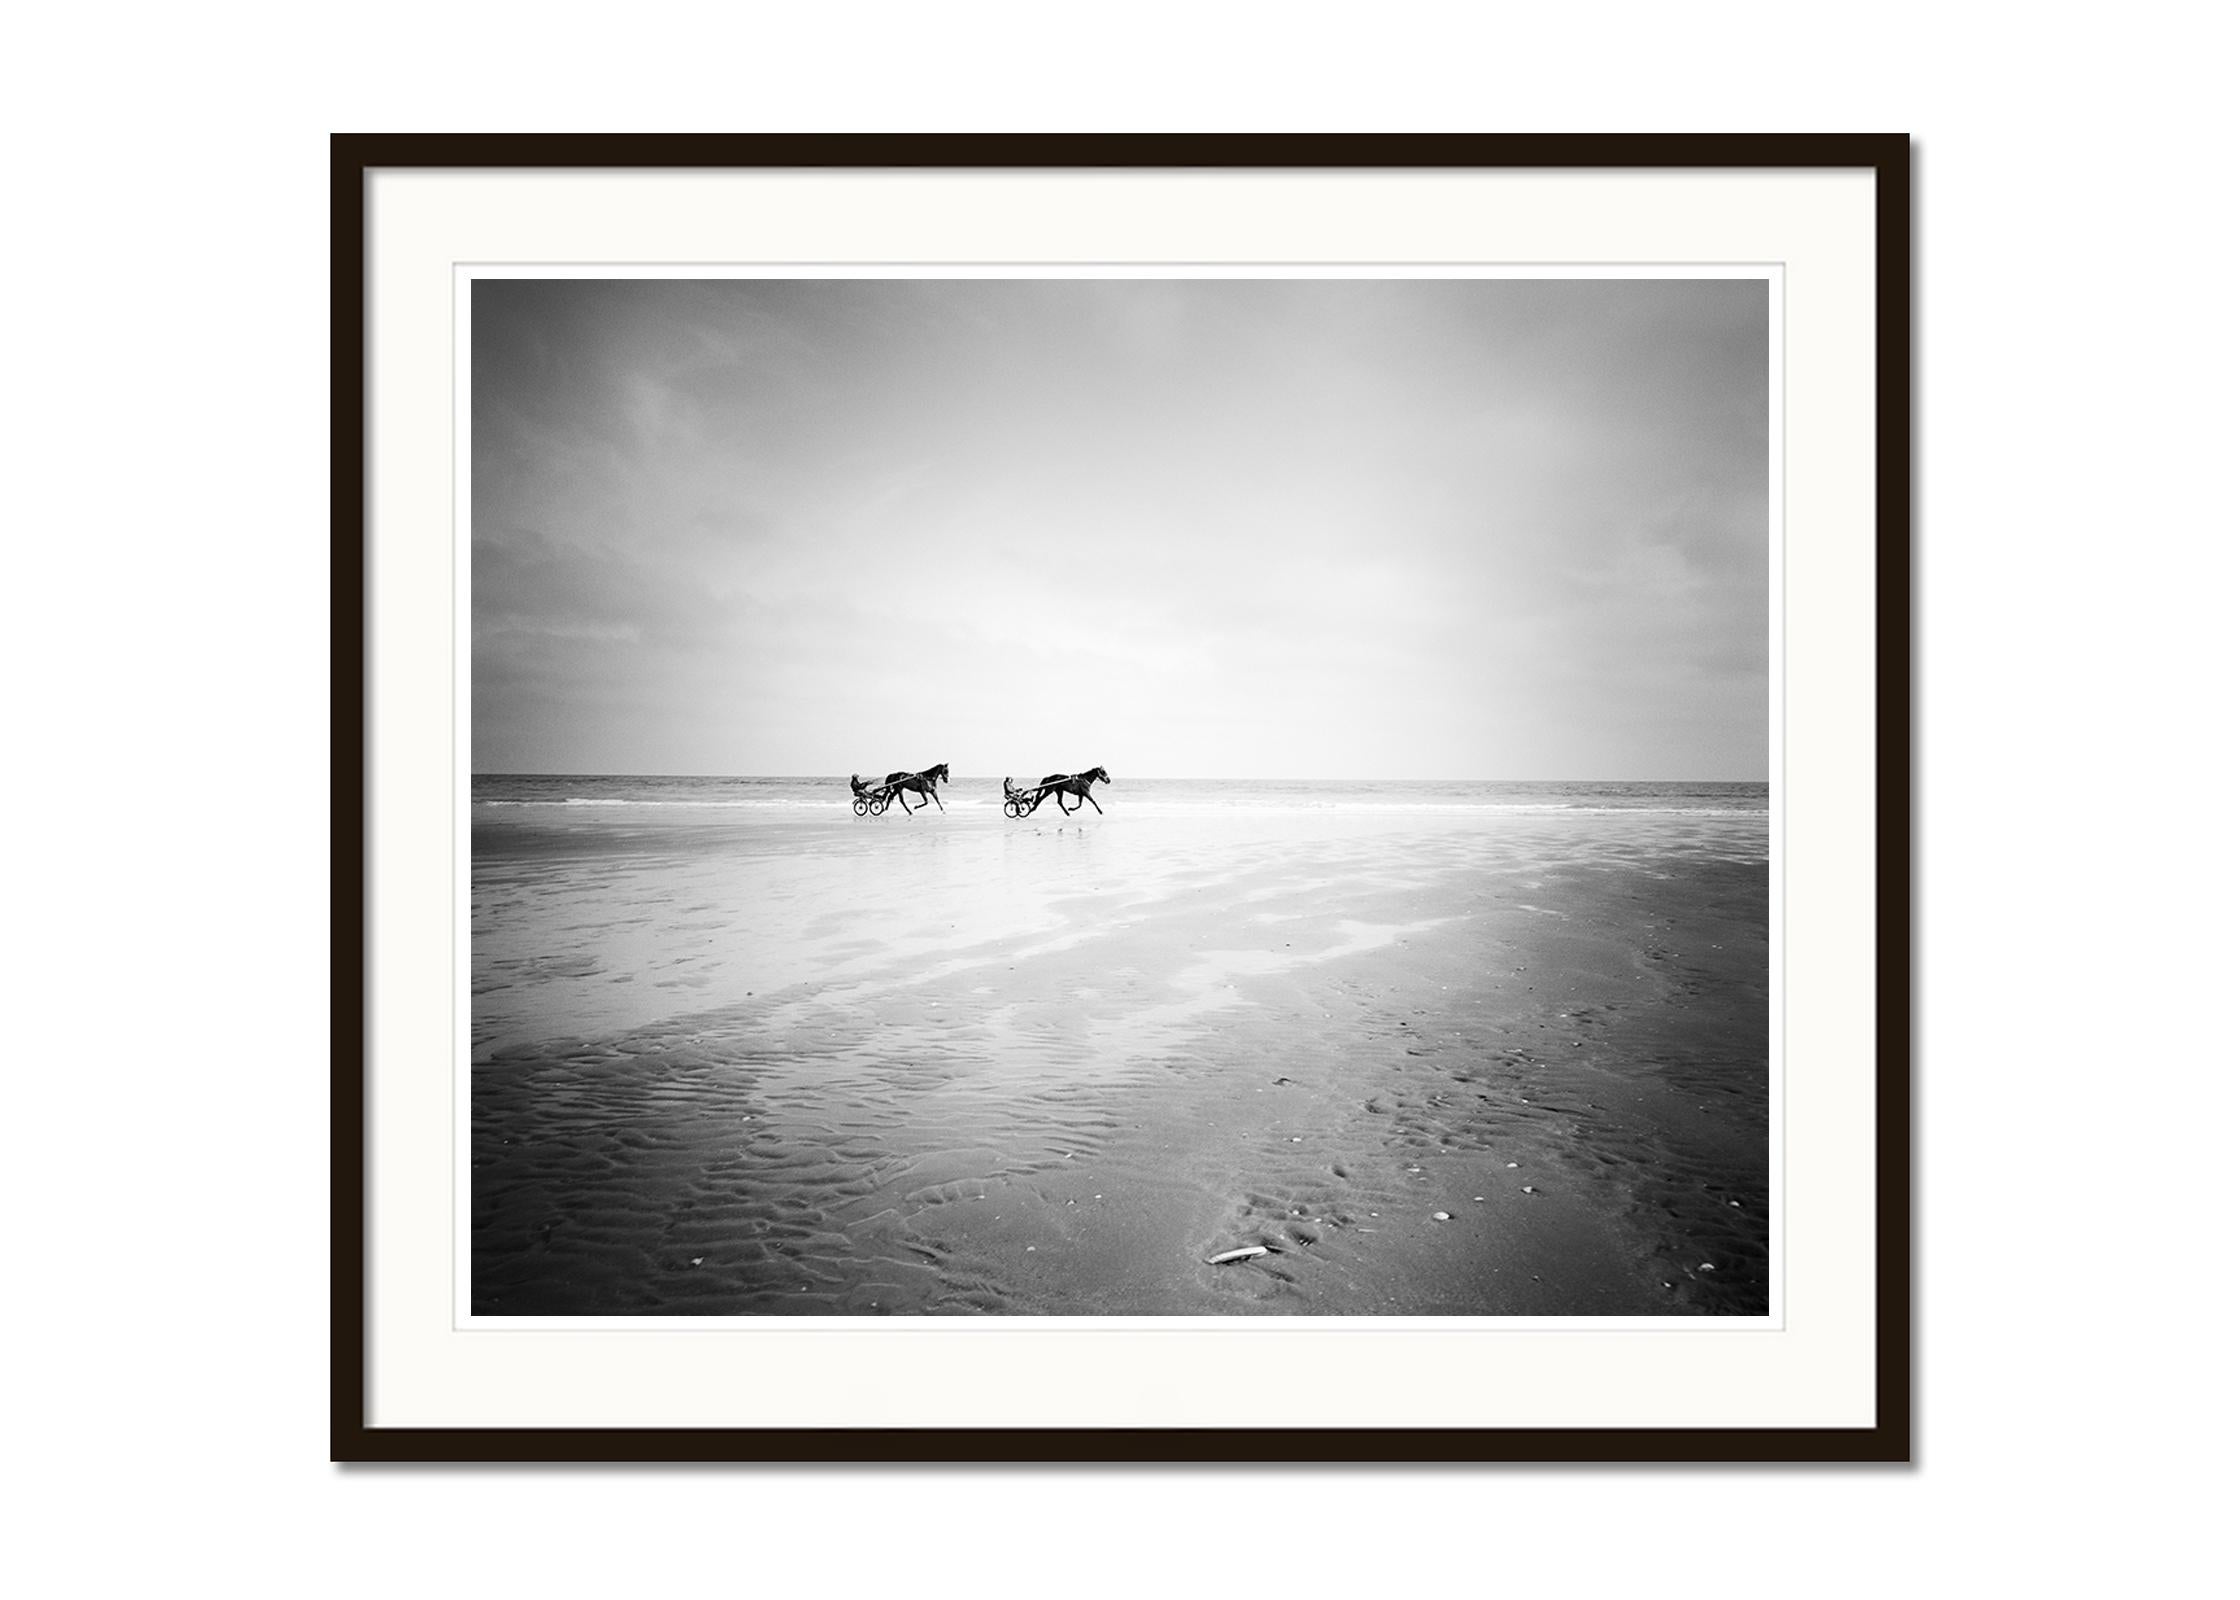 Harness Racing, Pferderennen, Strand, Schwarz-Weiß-Fotografie, Landschaft (Grau), Black and White Photograph, von Gerald Berghammer